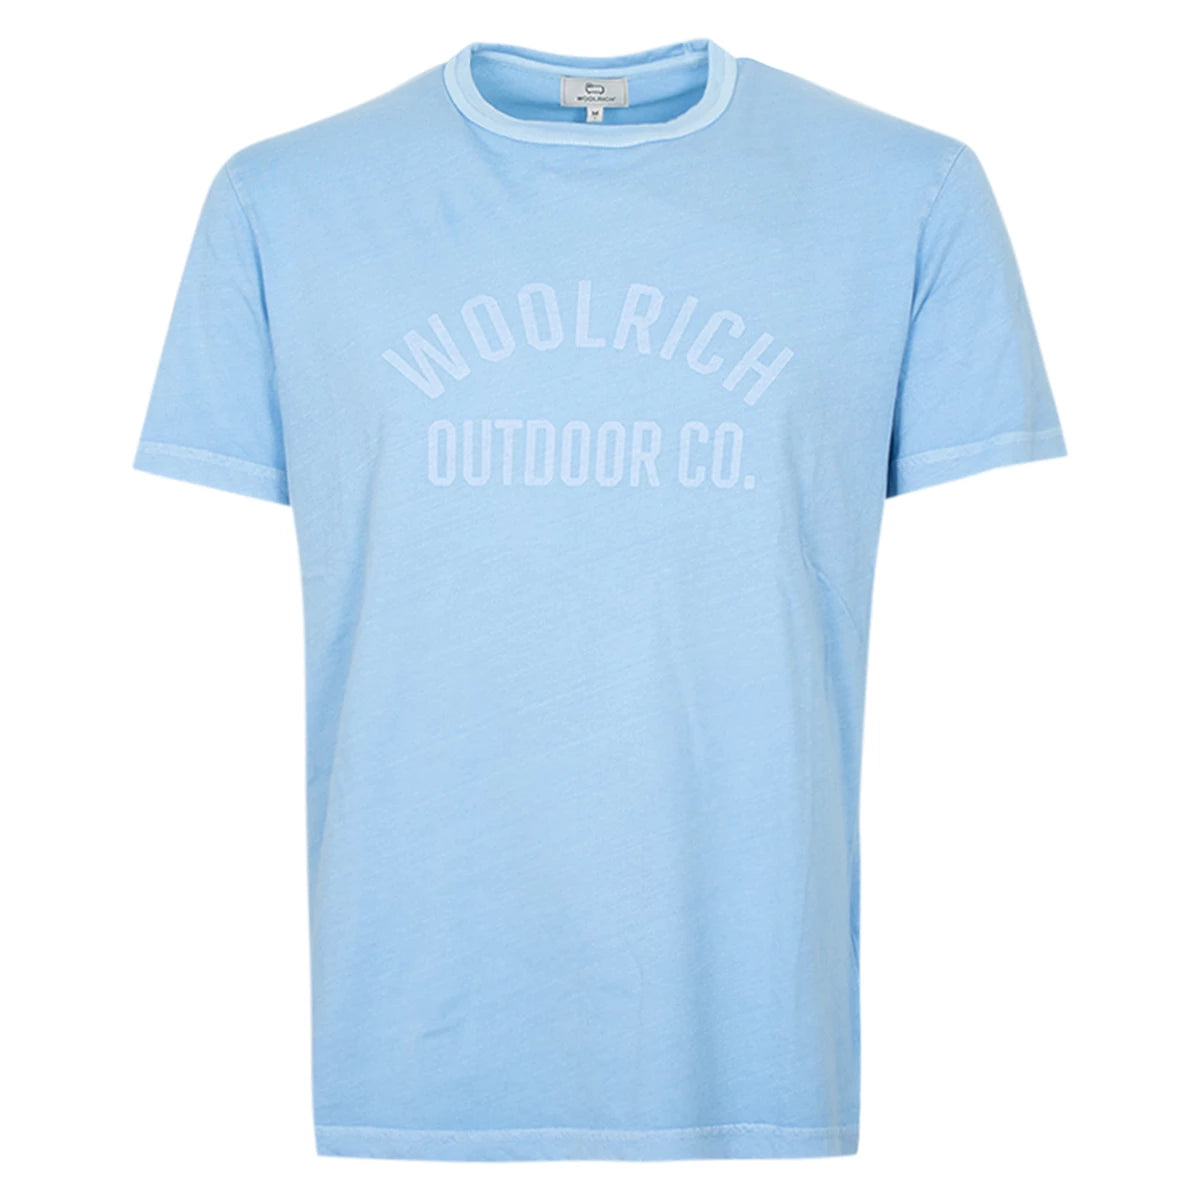 Woolrich T-shirt lichtblauw